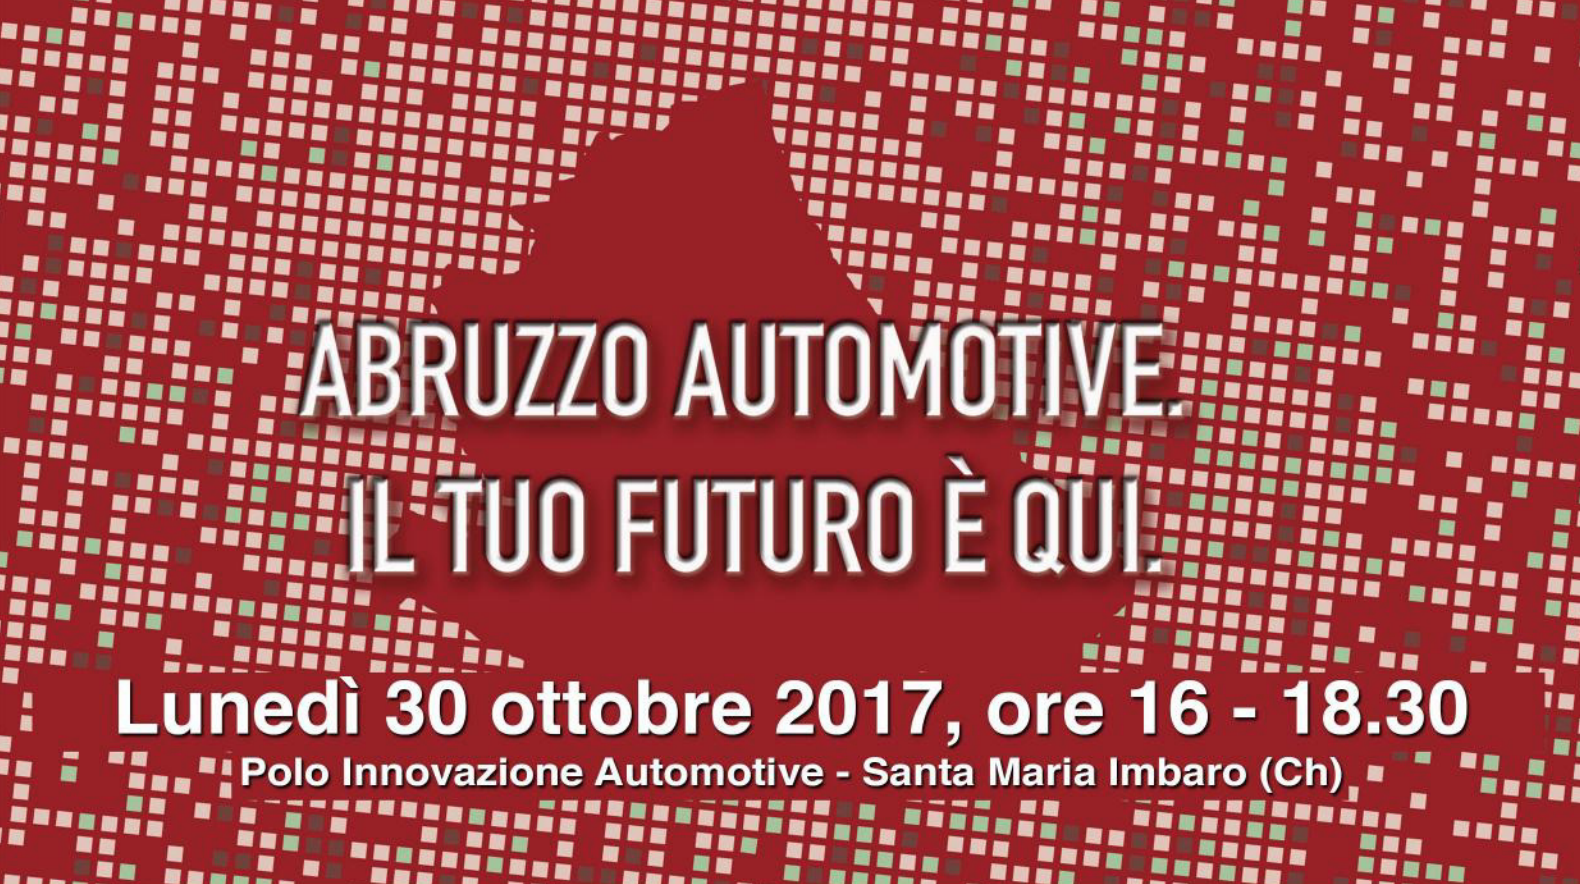 Polo Innovazione Automotive: presentazione dei progetti PAR FSC e linee strategiche per la programmazione 2017-18